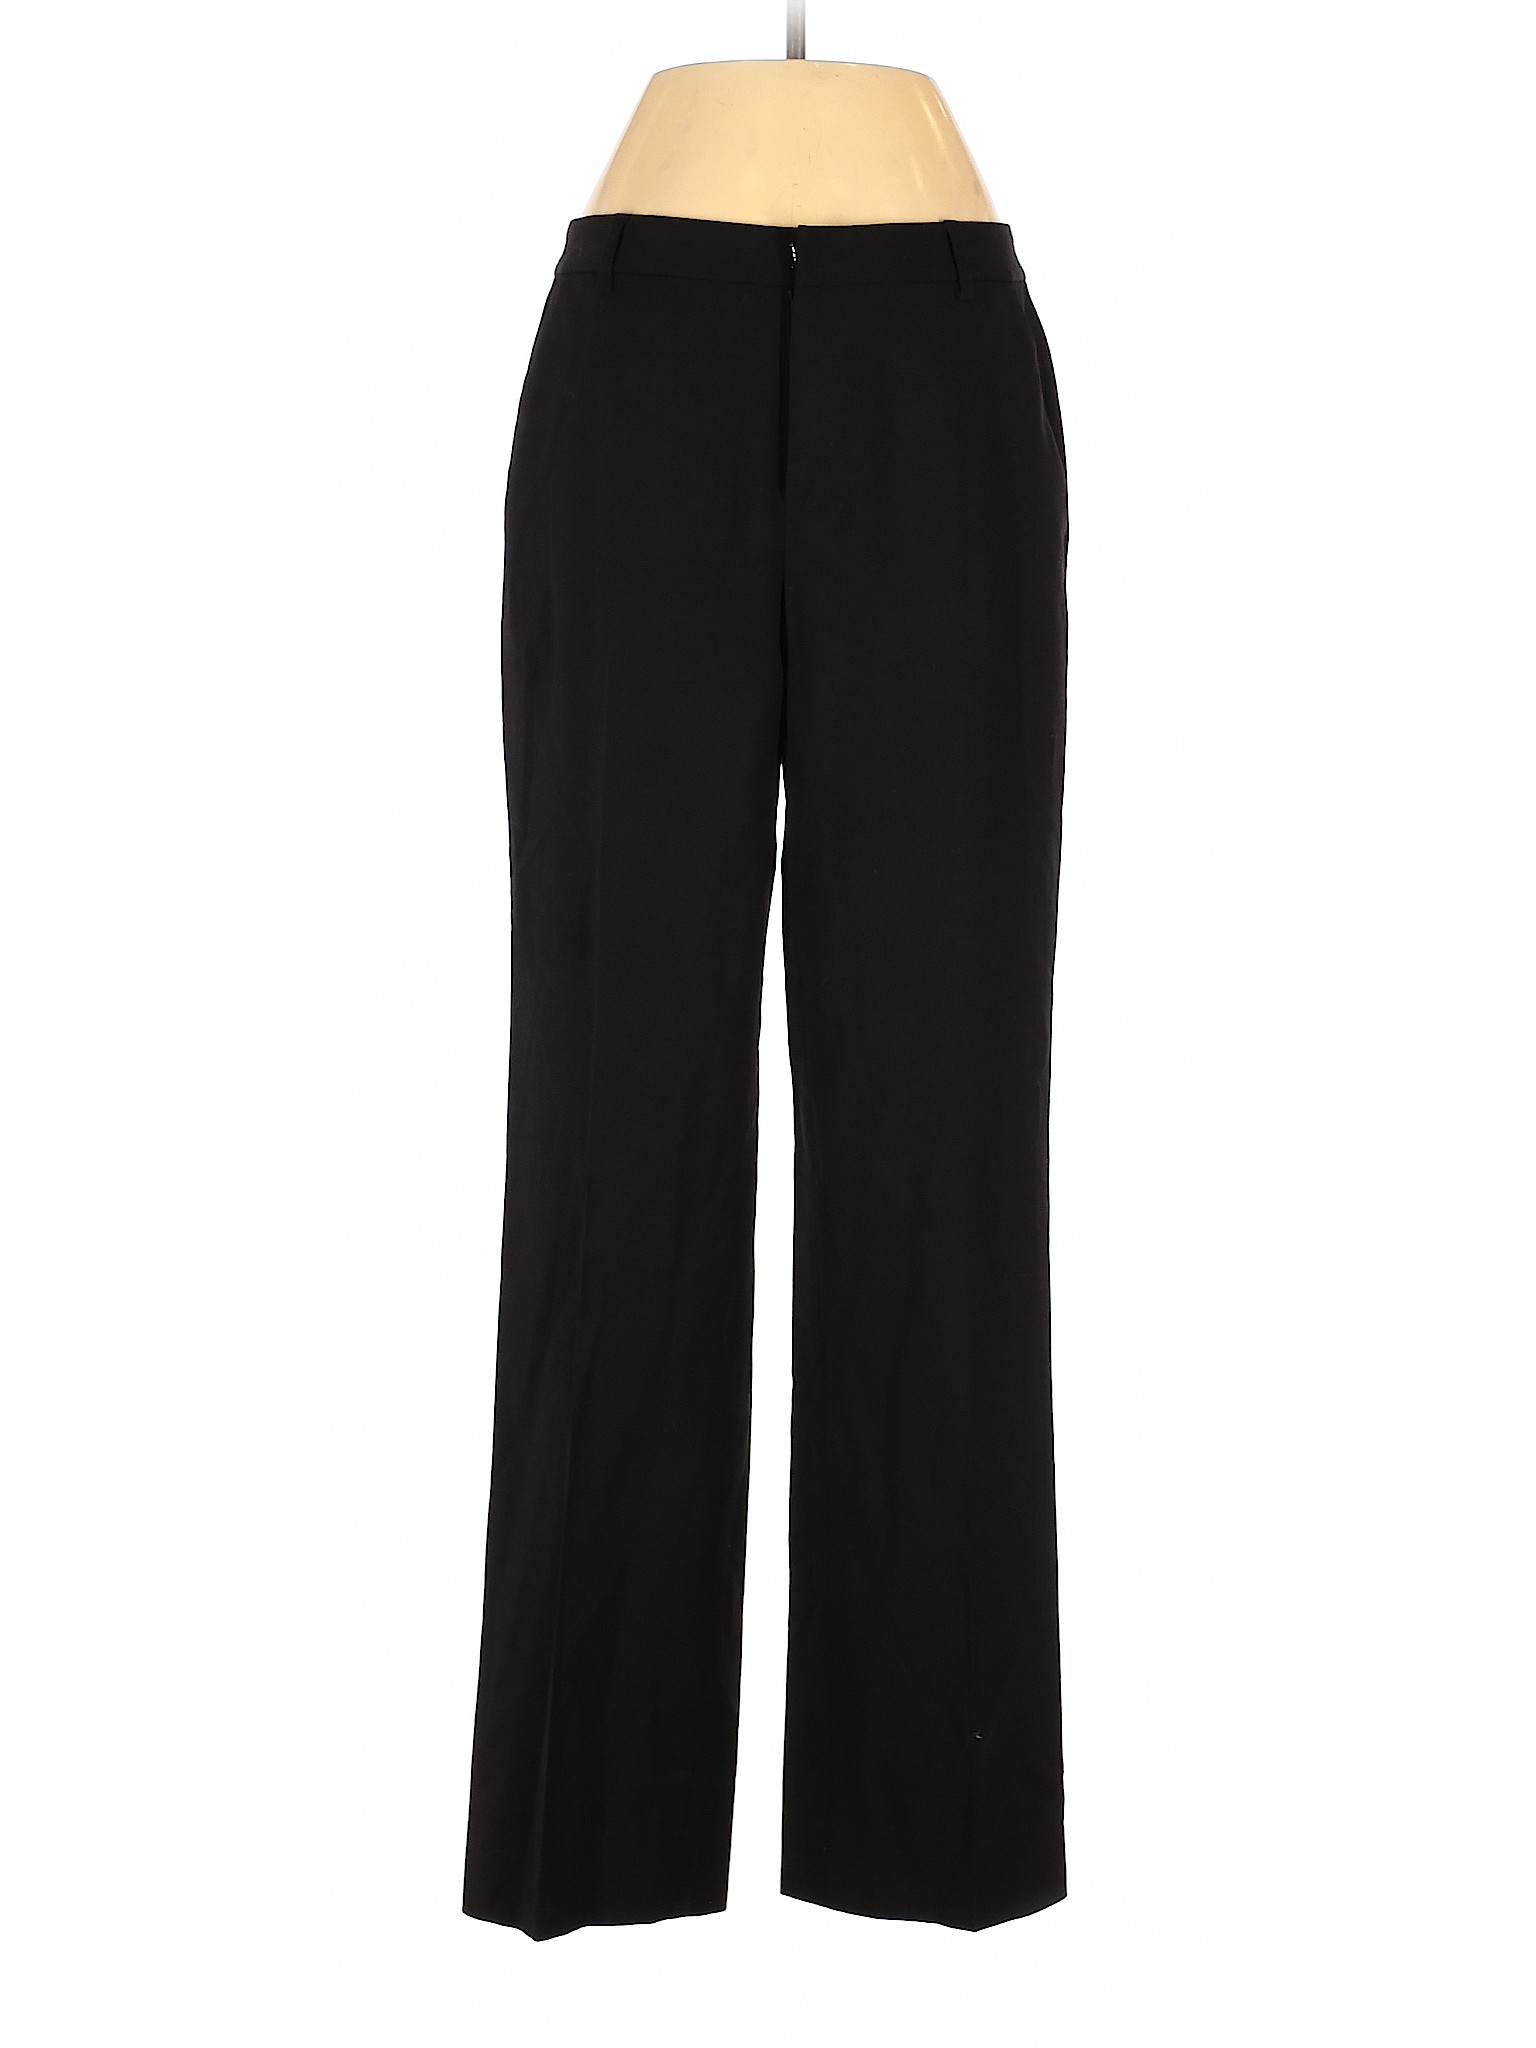 Lauren by Ralph Lauren Women Black Wool Pants 4 | eBay